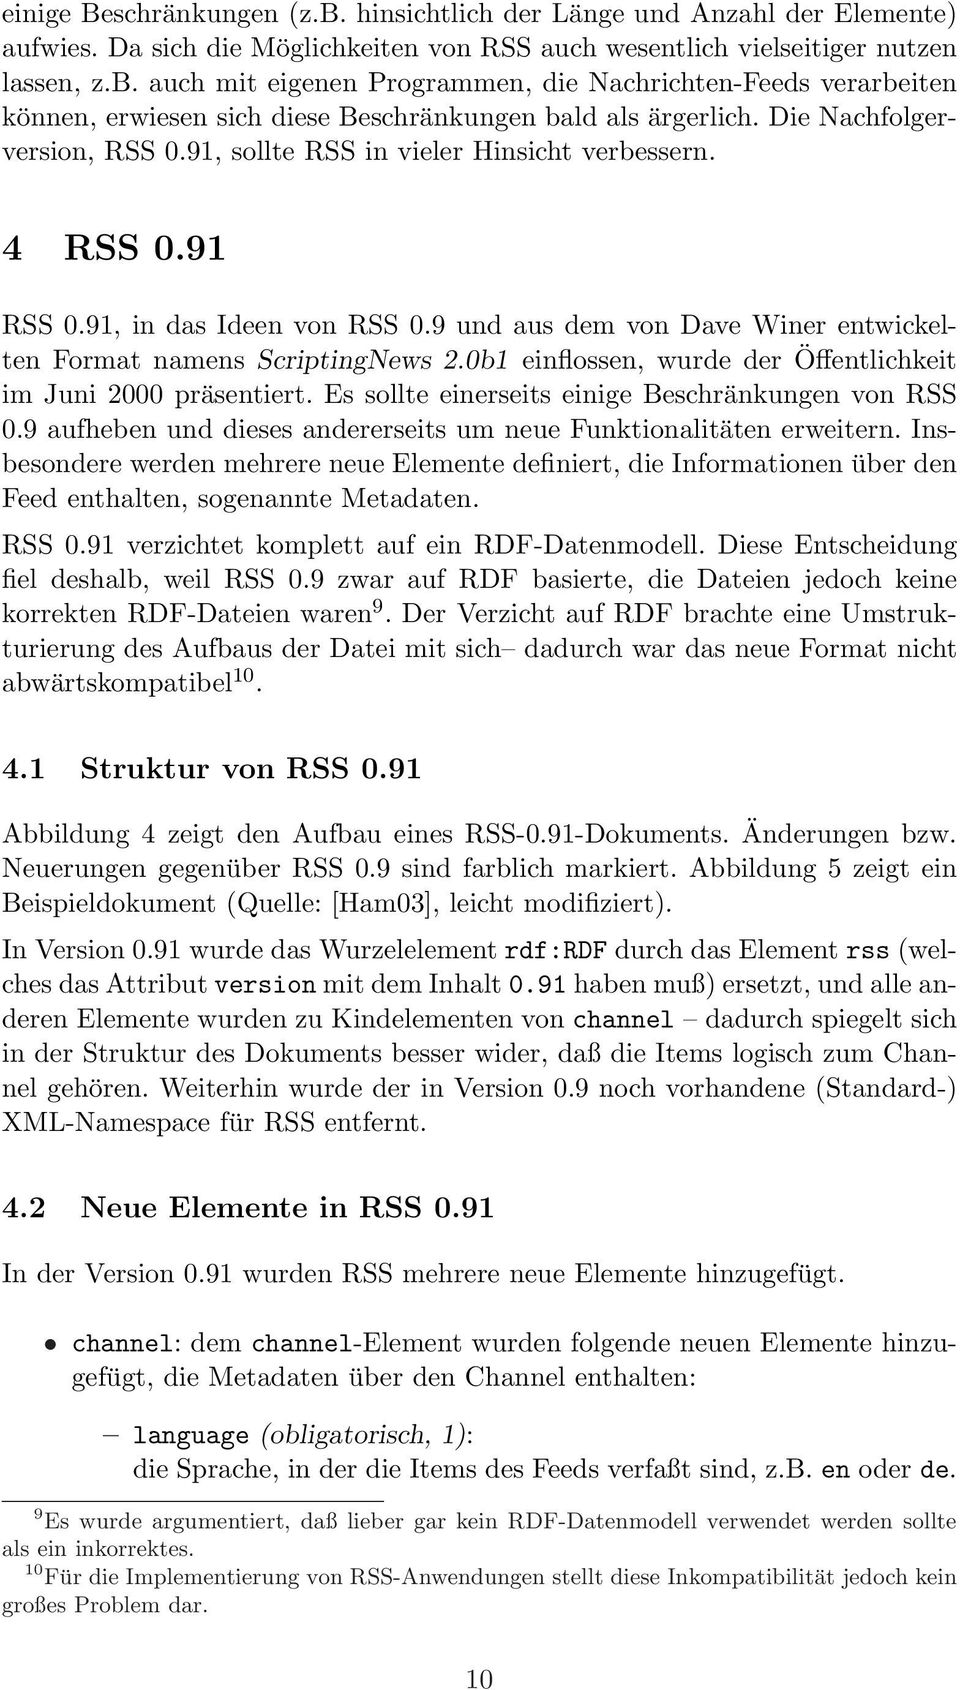 0b1 einflossen, wurde der Öffentlichkeit im Juni 2000 präsentiert. Es sollte einerseits einige Beschränkungen von RSS 0.9 aufheben und dieses andererseits um neue Funktionalitäten erweitern.